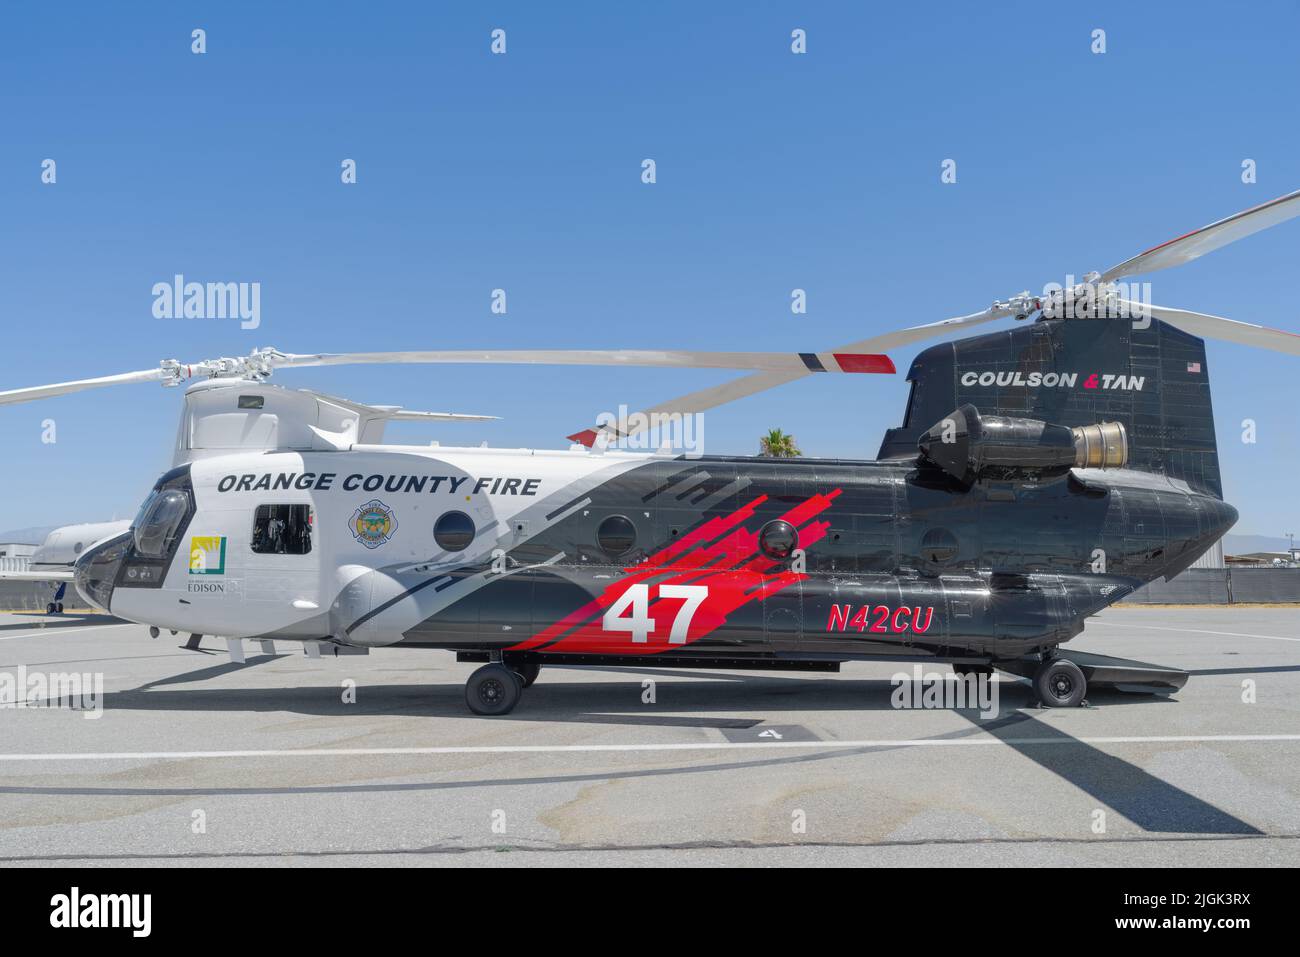 Orange County Fire Authority Boeing CH-47D elicottero Chinook con registrazione N42CU mostrato all'aeroporto di Chino a Chino, California. Foto Stock